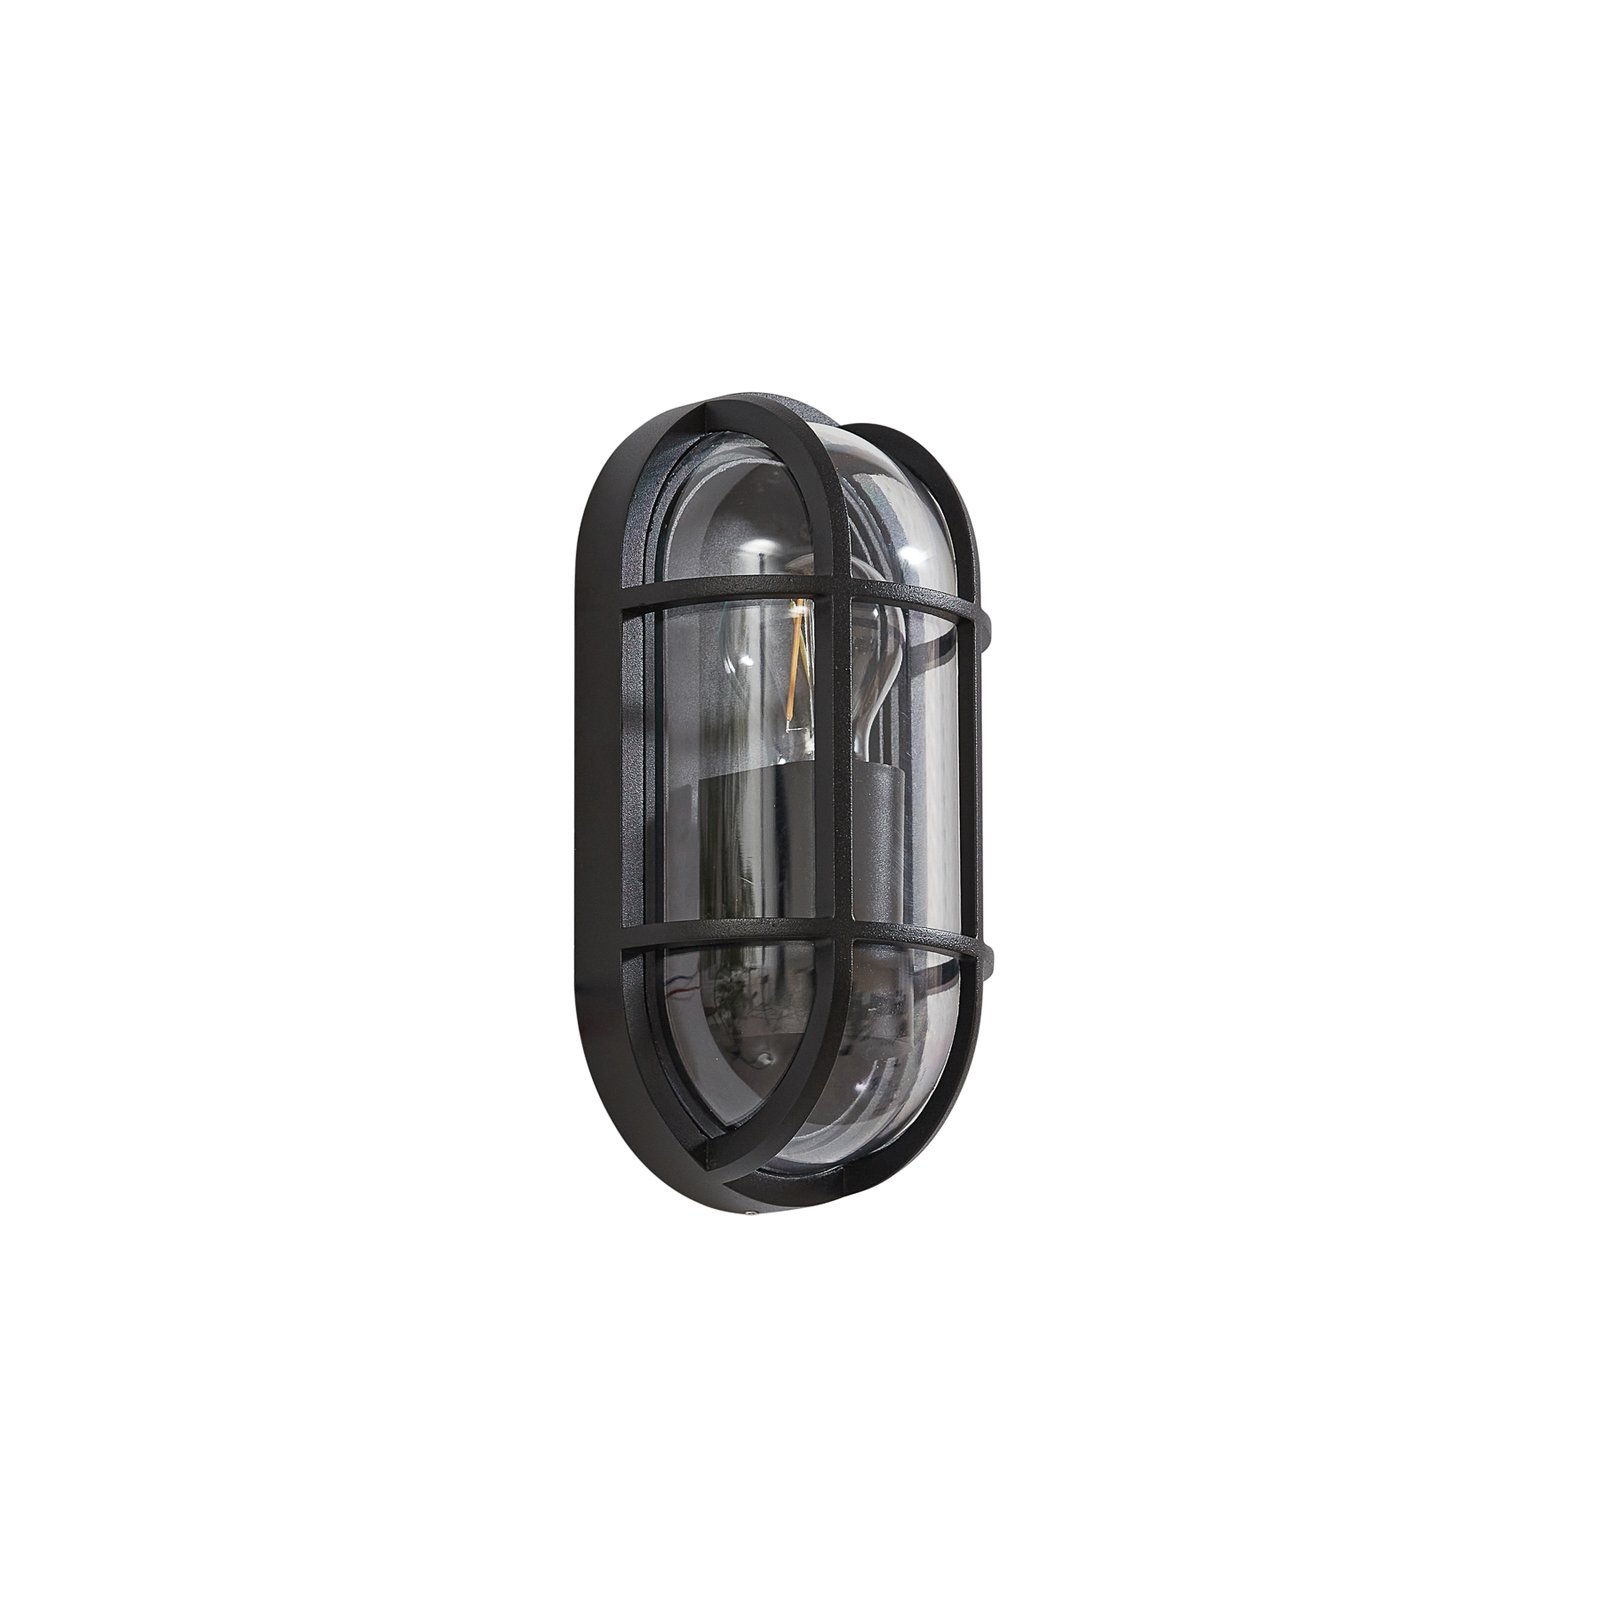 Lucande vanjska zidna svjetiljka Serine, 27,1 cm, crna, aluminij